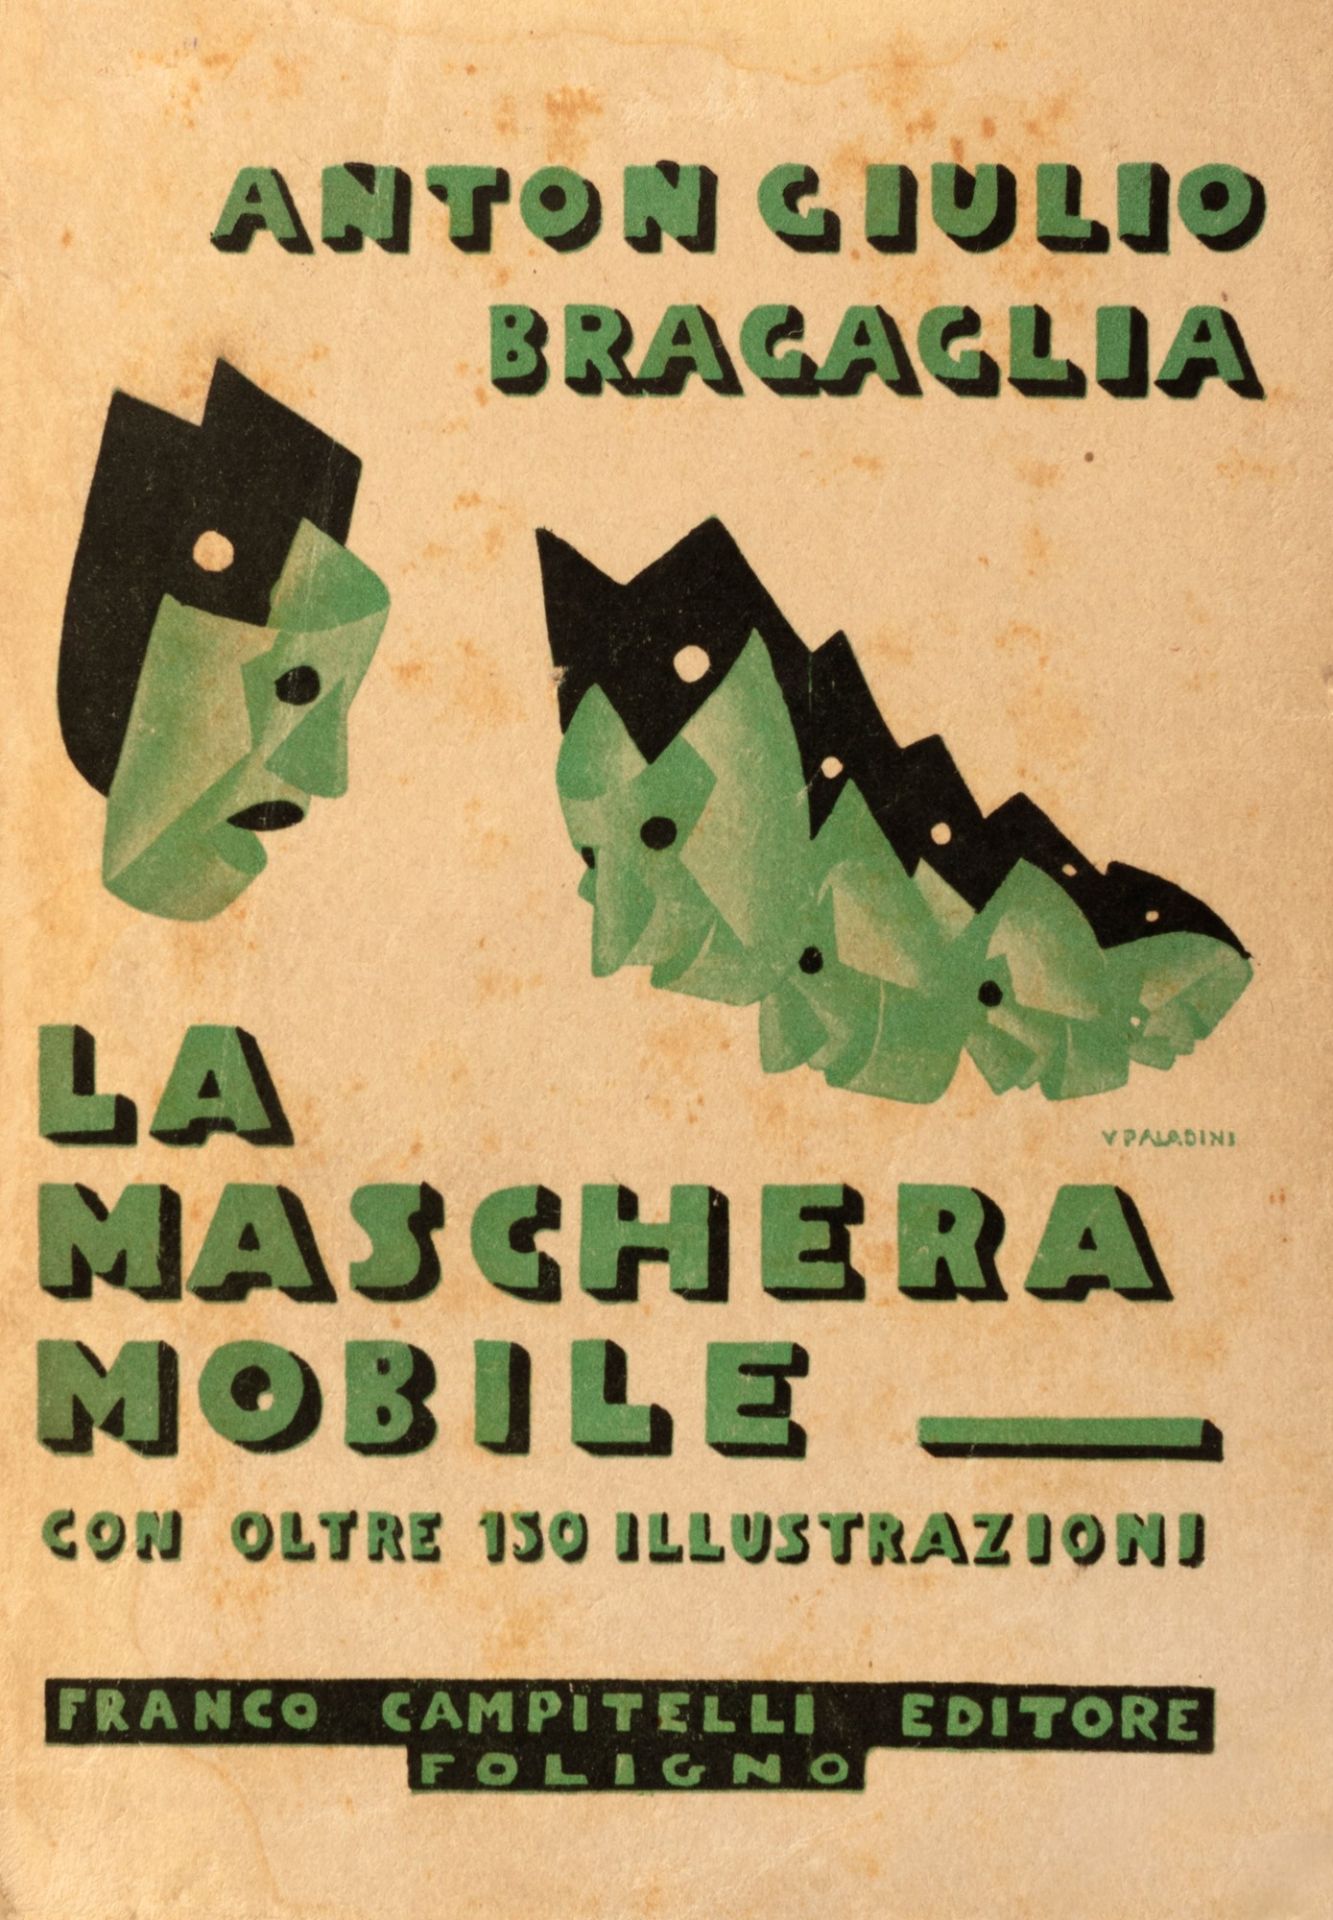 Futurismo - Bragaglia, Anton Giulio - The moving mask